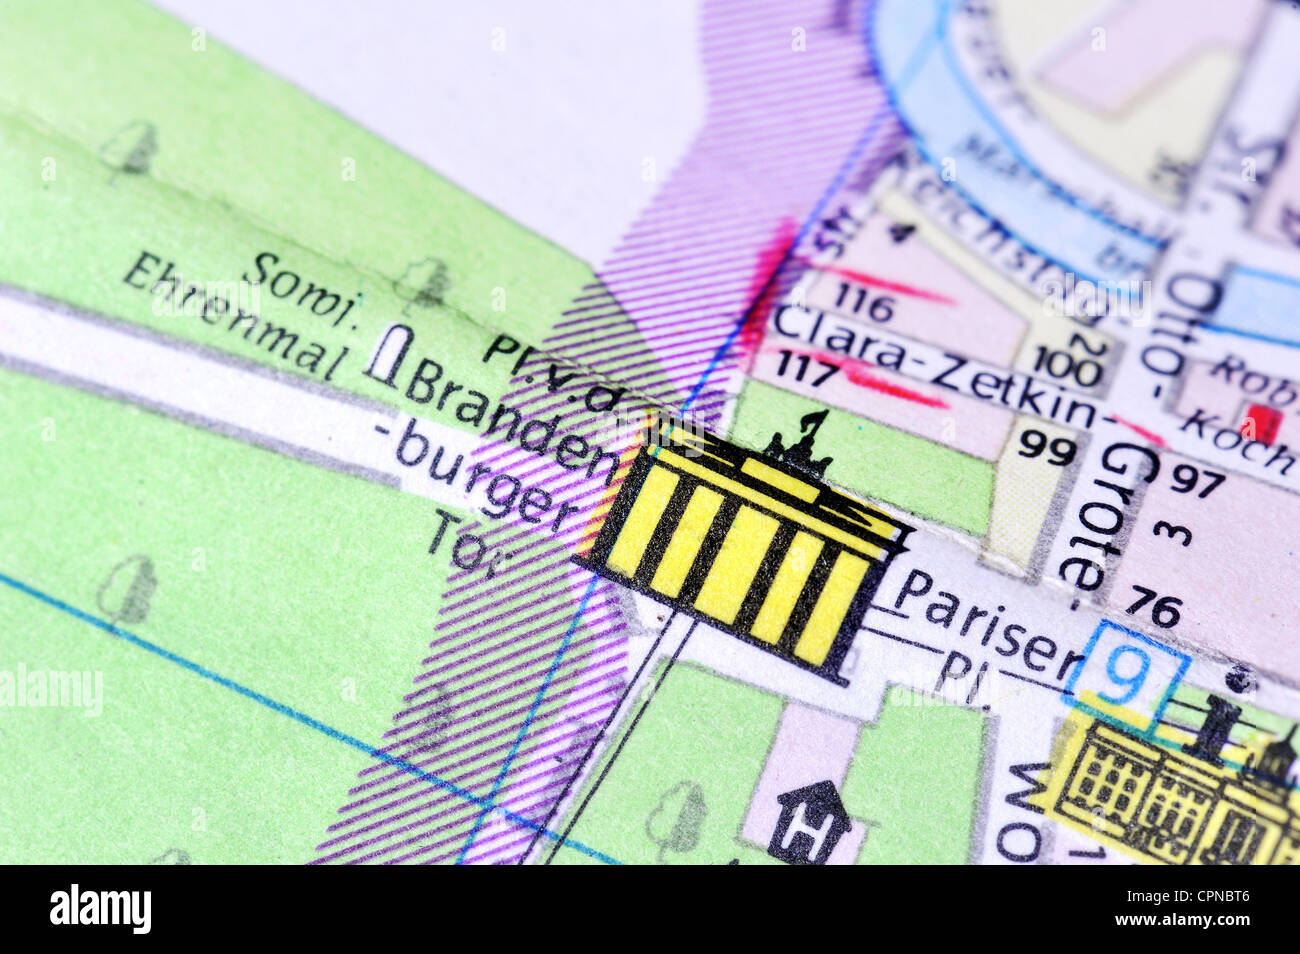 Cartografia, mappa della città, Berlino, dettaglio, porta di Brandeburgo,  Pariser Platz, Germania orientale, 1980, diritti-aggiuntivi-non disponibili  Foto stock - Alamy